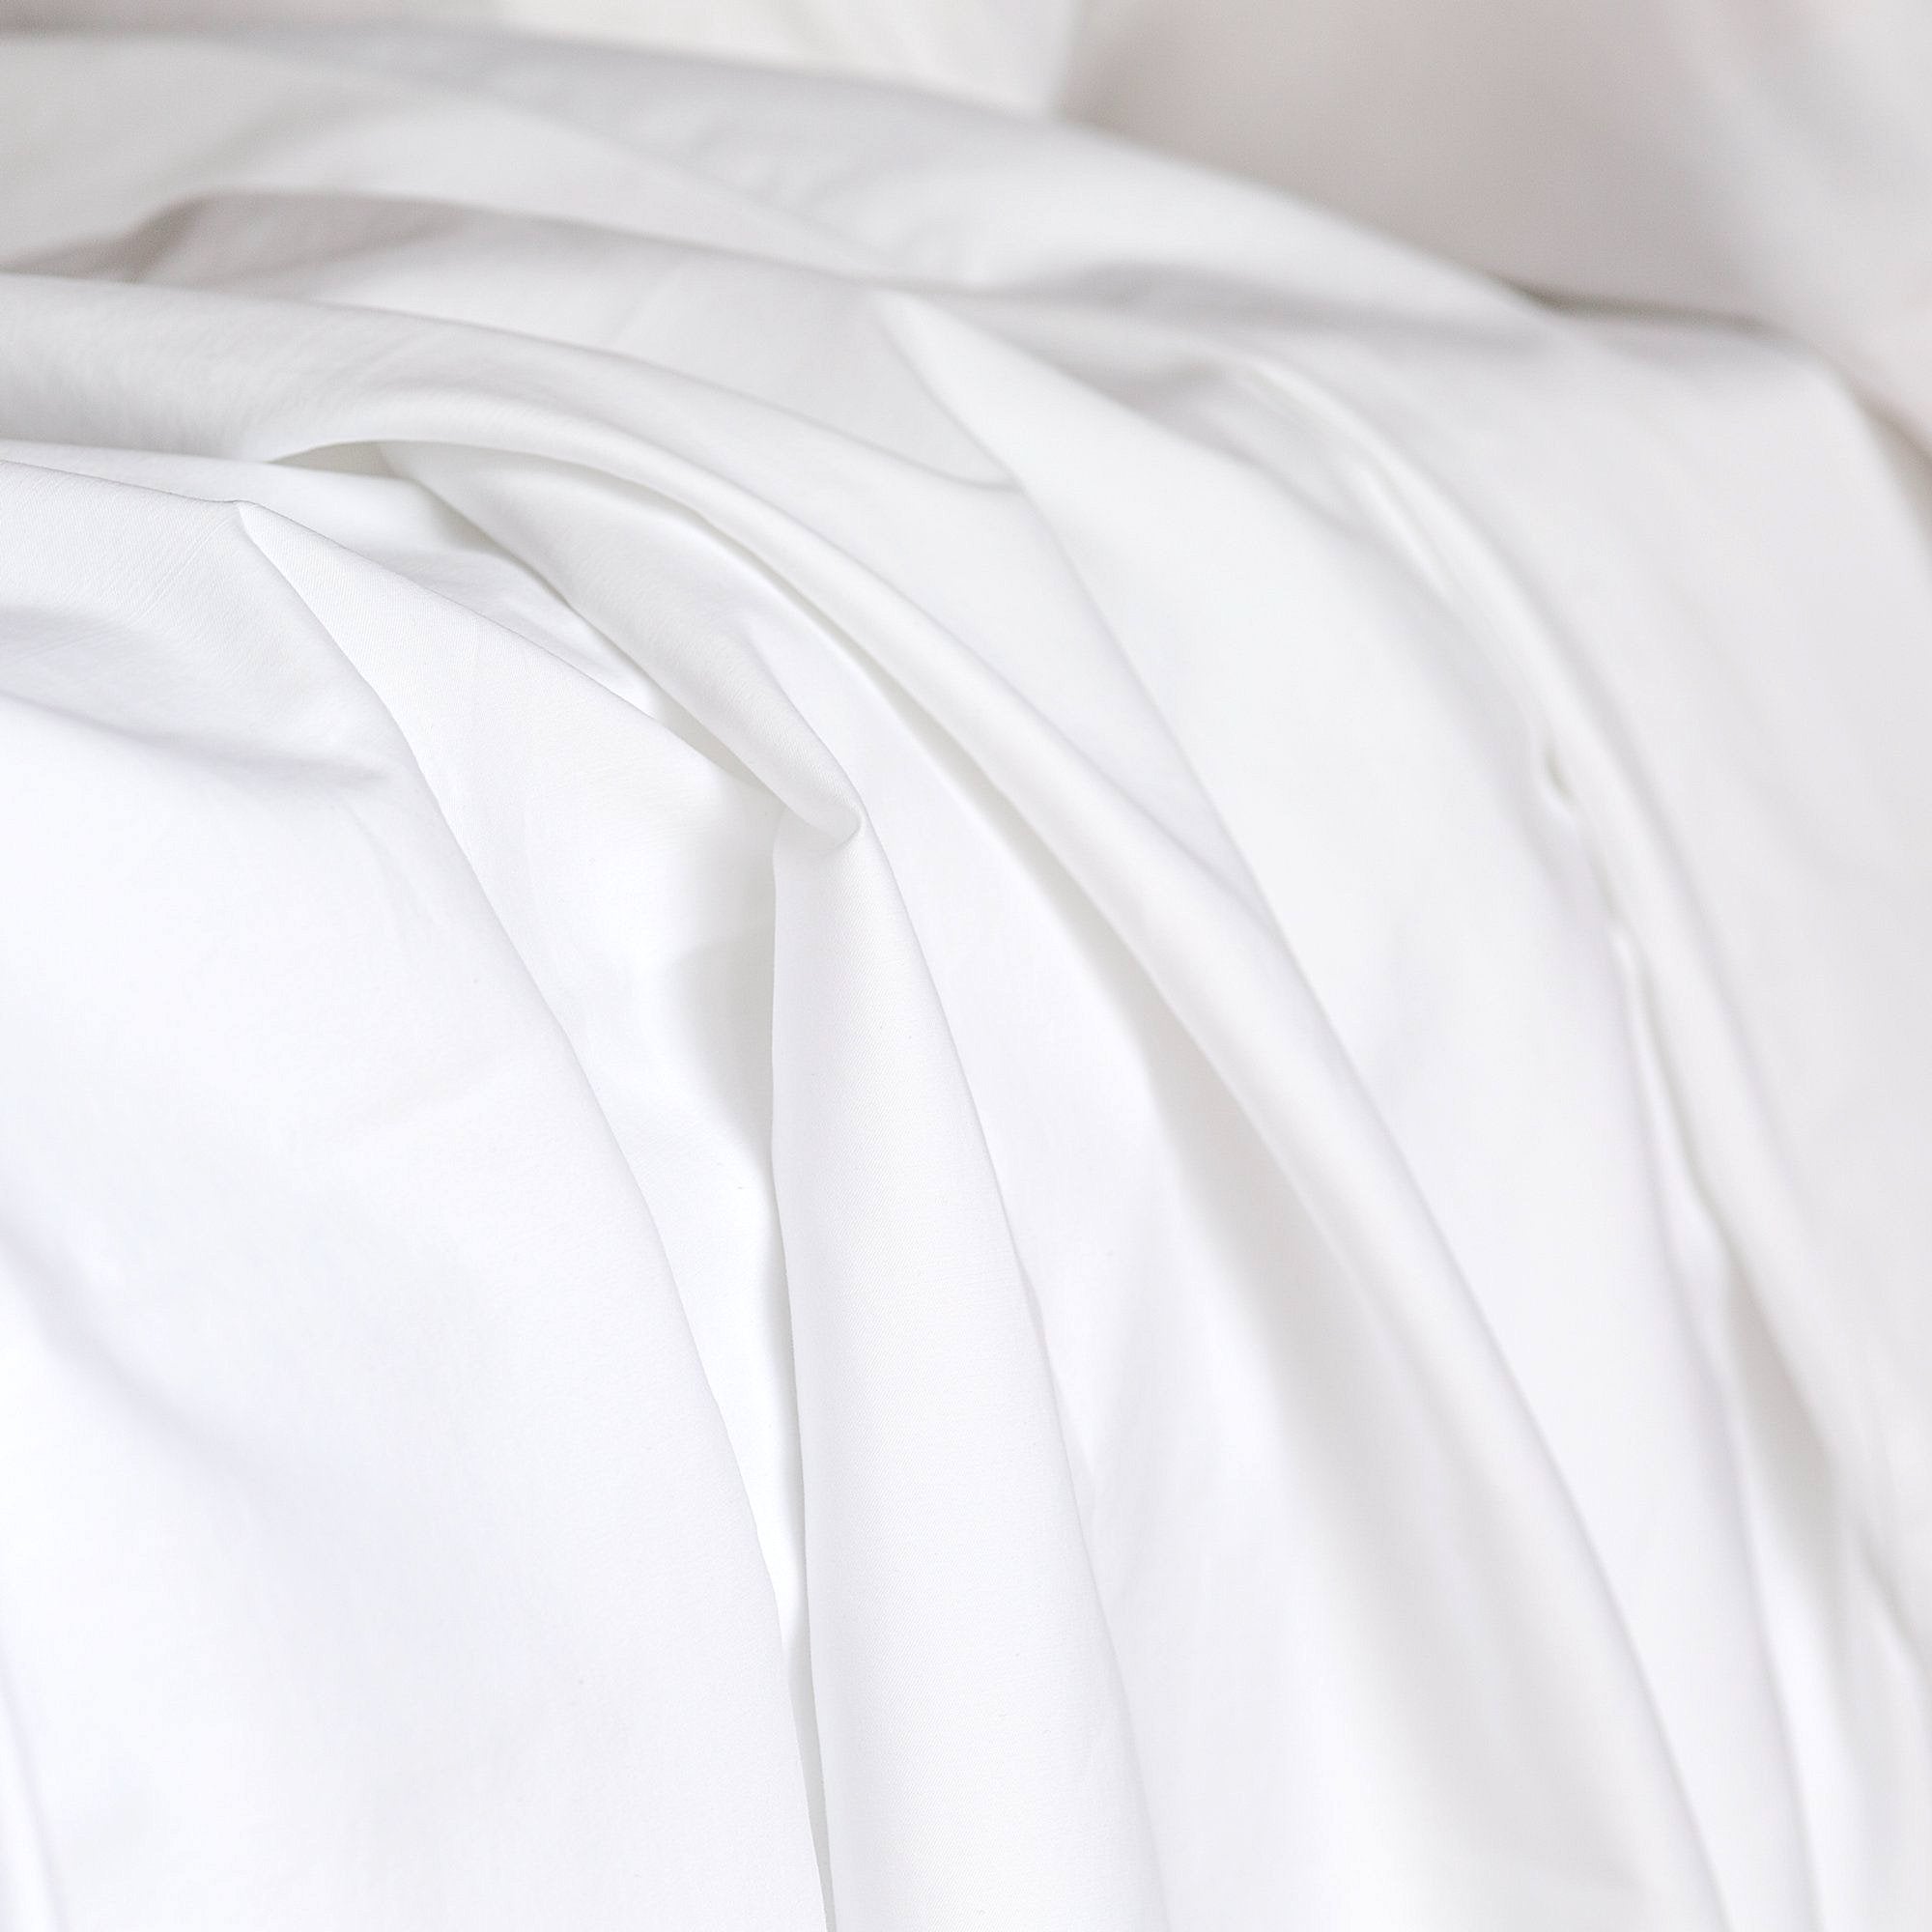 customised bedding India, personalised bedsheet set